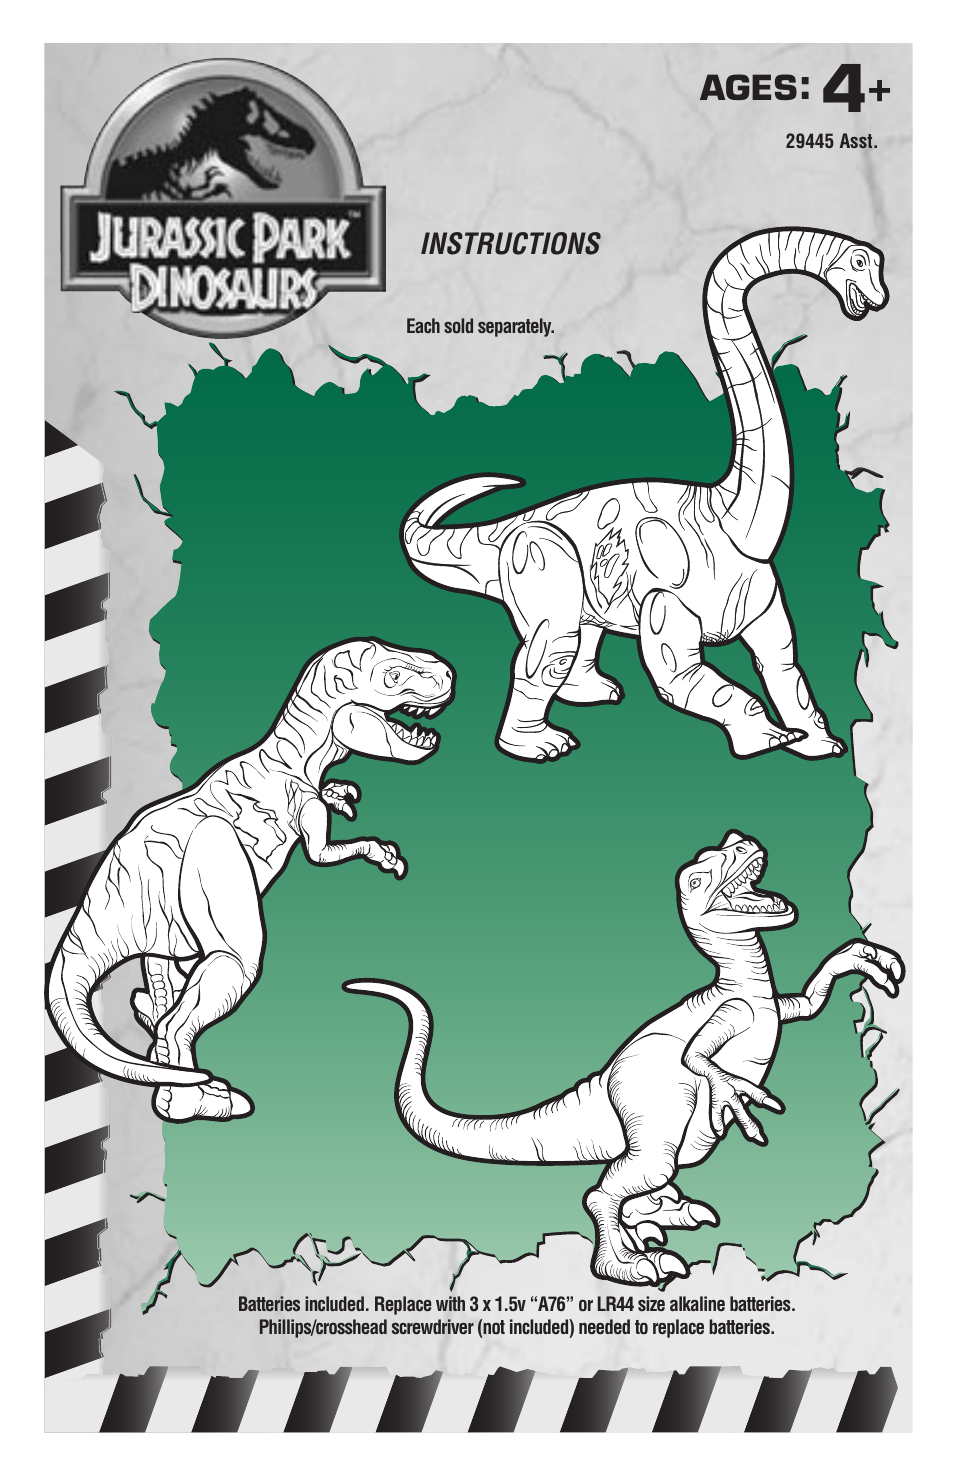 Jurassic Park Dinosaurs 29445